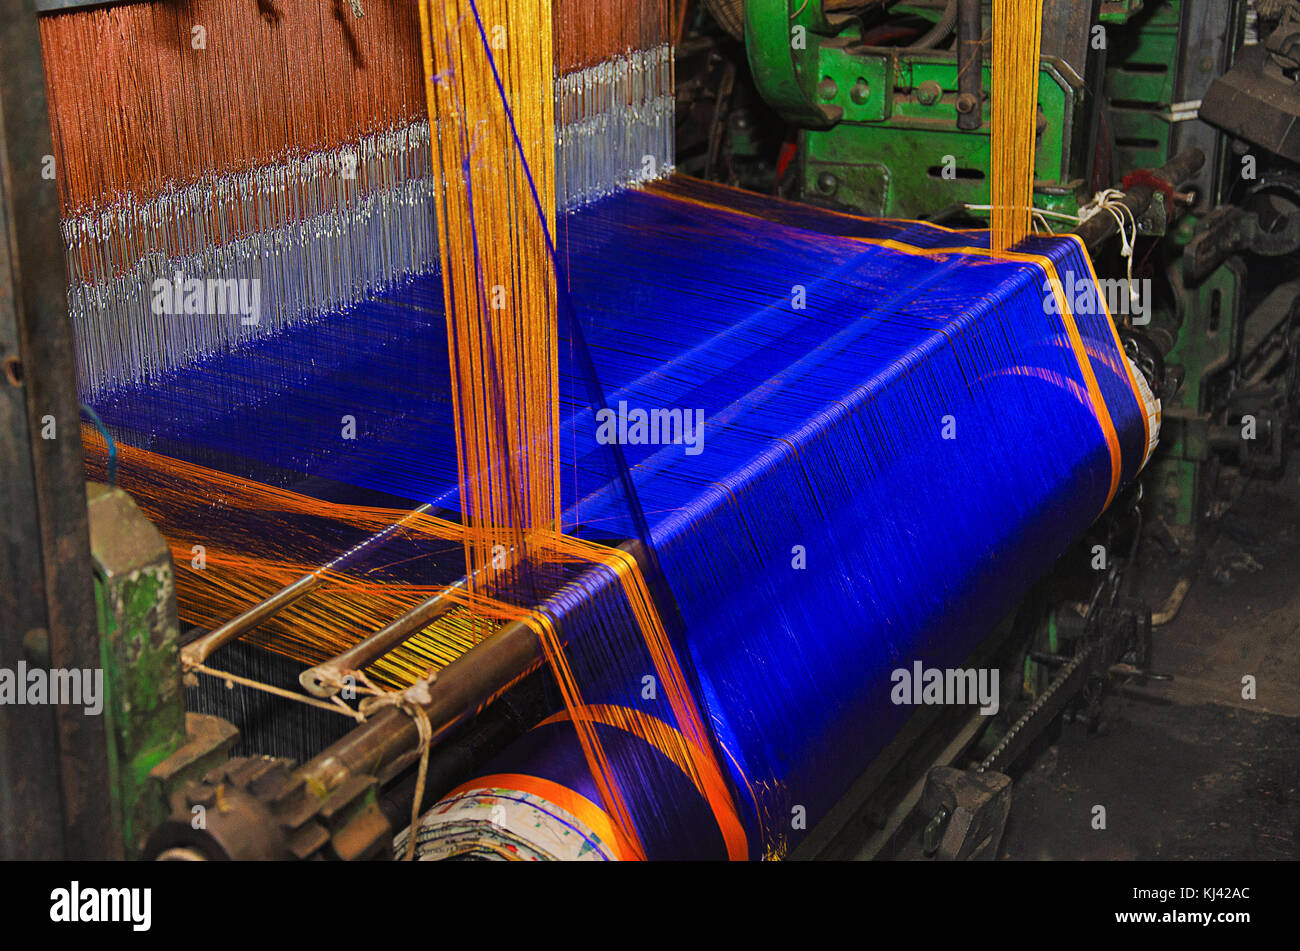 Teil eines automatischen saree Webmaschine in der Weberei 9 Yard blau gefärbten Saree mit goldfarbener Rand eingerückt. Belagavi, Karnataka, Indien Stockfoto